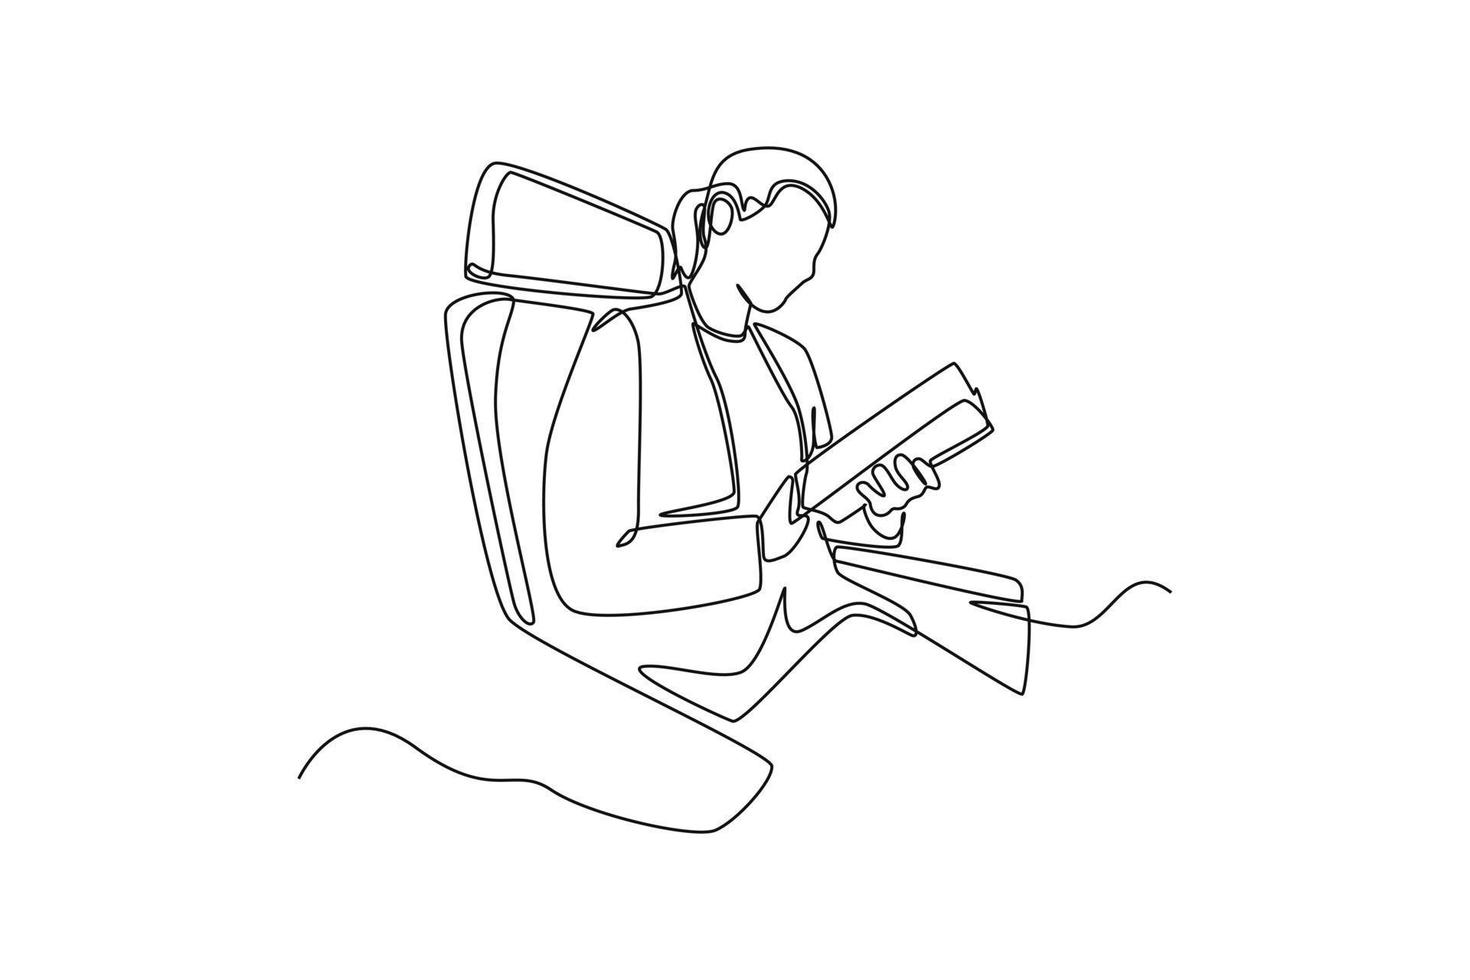 única linha desenhando uma mulher feliz em assentos viajando de avião. conceito de transporte aéreo. ilustração em vetor gráfico de desenho de desenho de linha contínua.